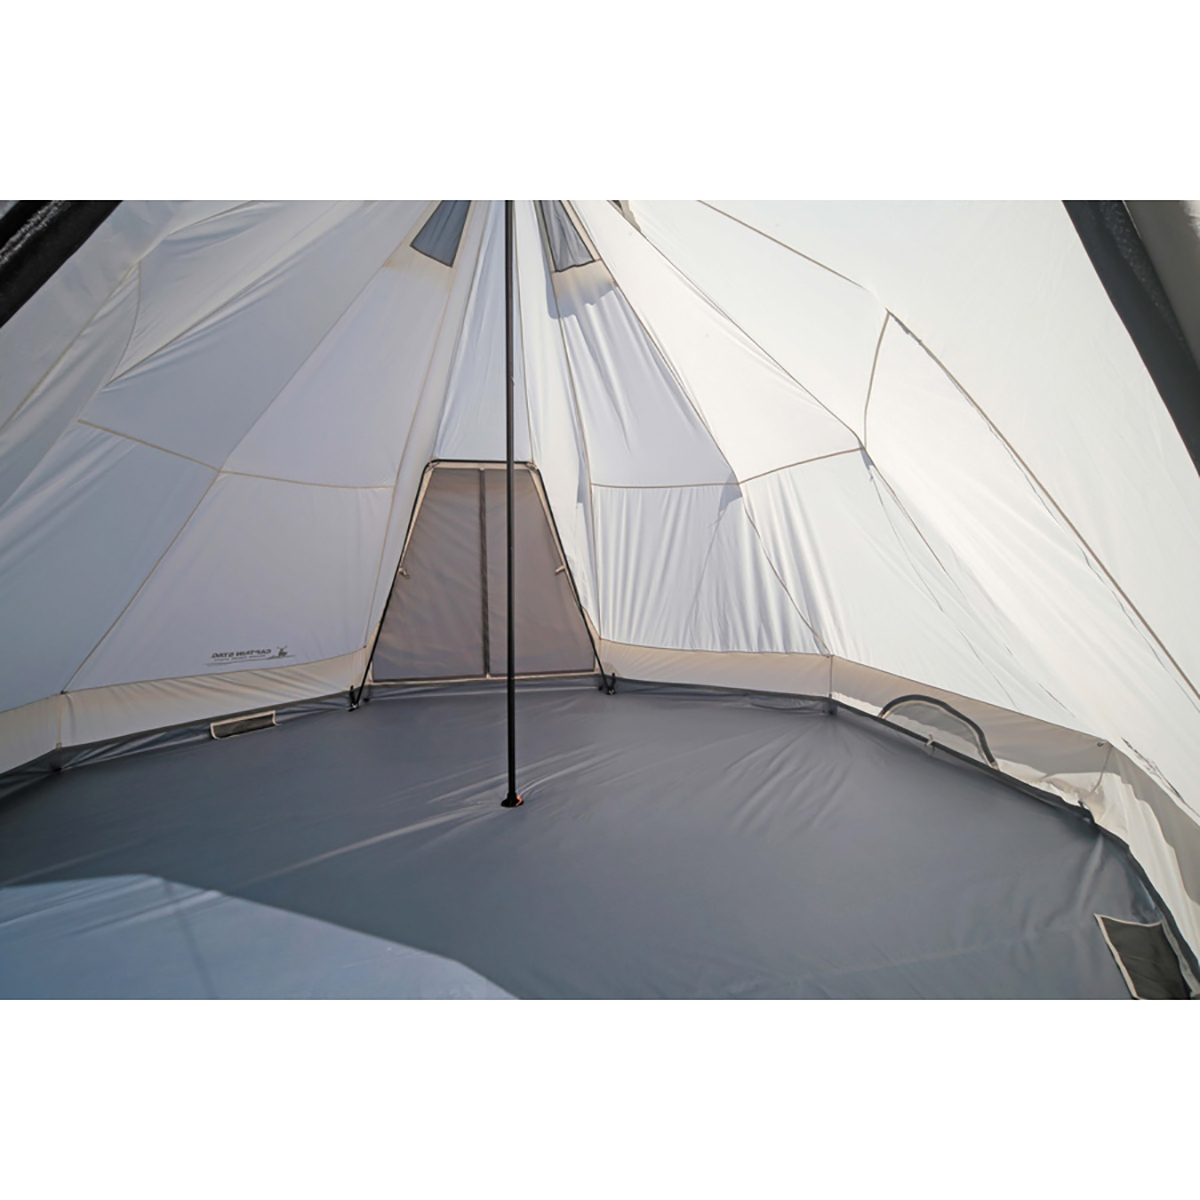 アウトドア テント/タープ CSクラシックス ワンポールテント DXオクタゴン460UV - アウトドア 